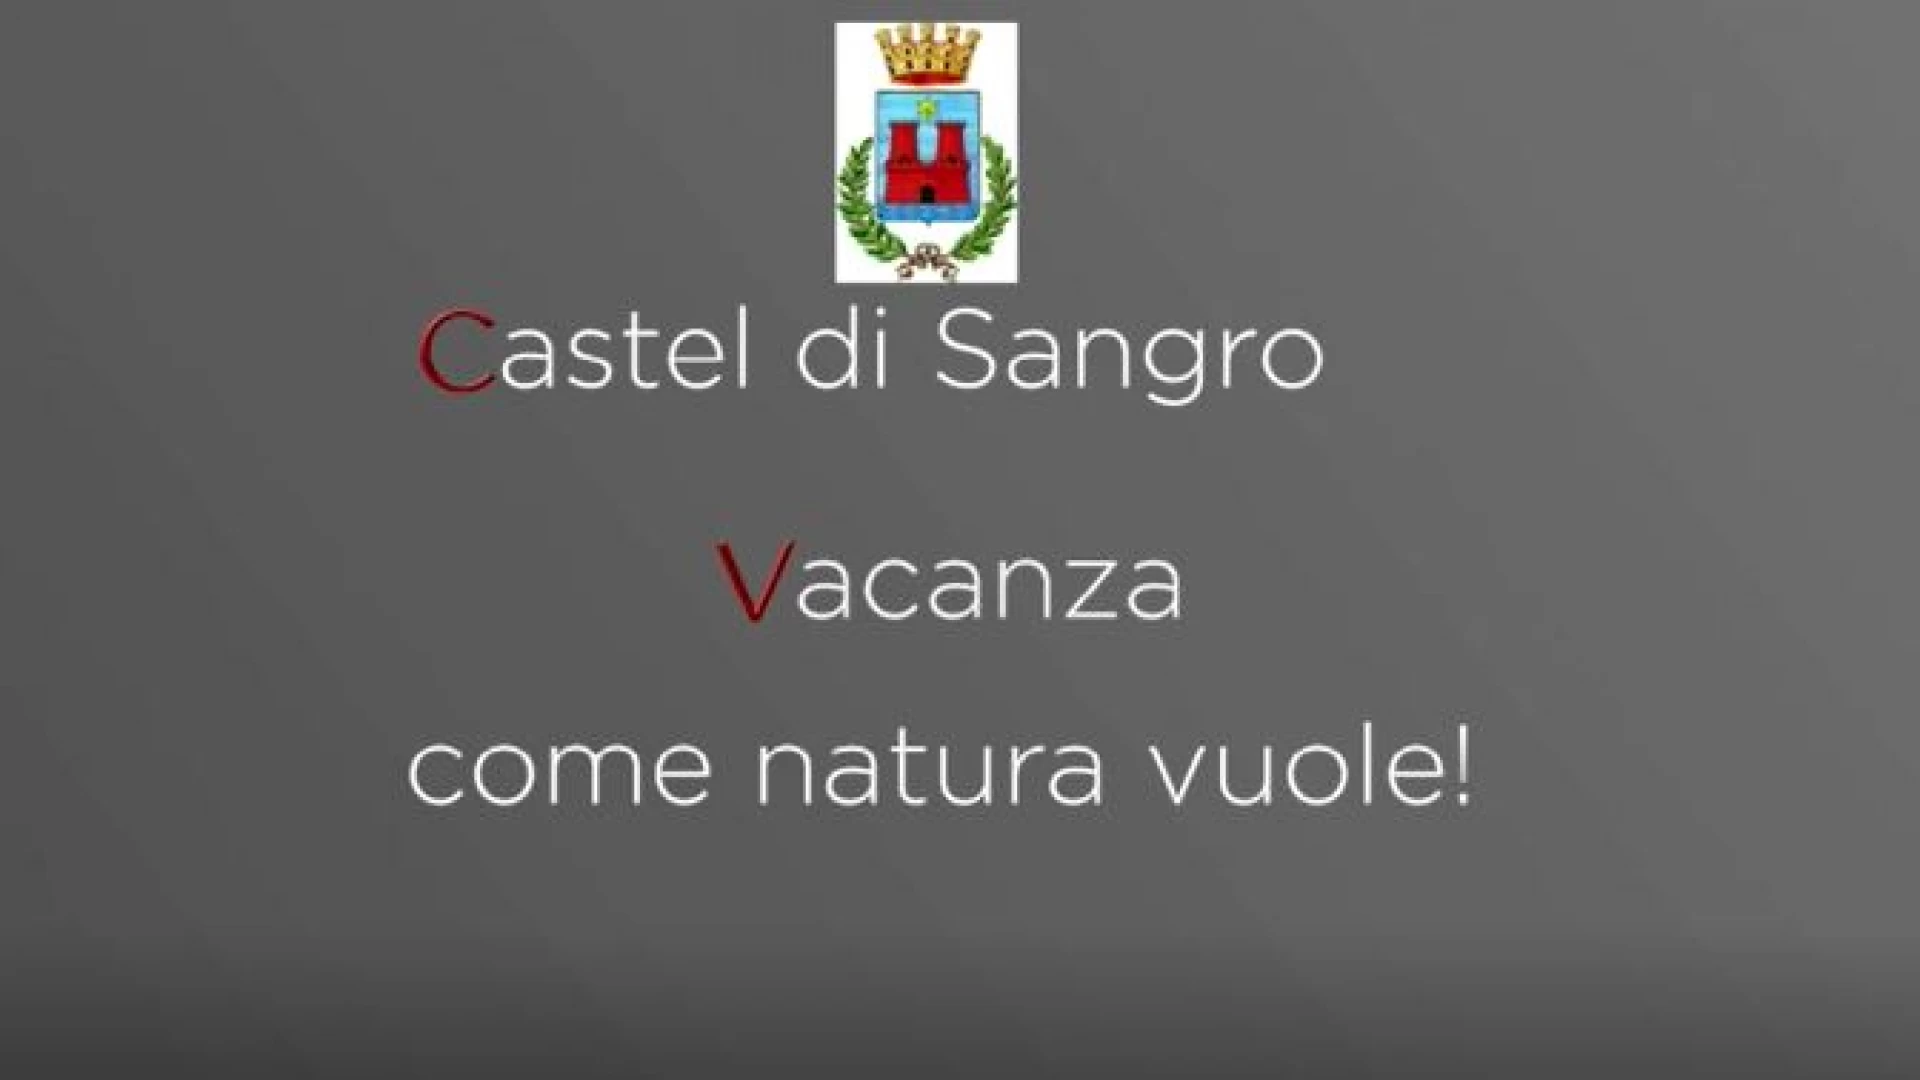 Castel Di Sangro, vacanza come natura vuole. Guarda il video promo della cittadina dell'Alto Sangro